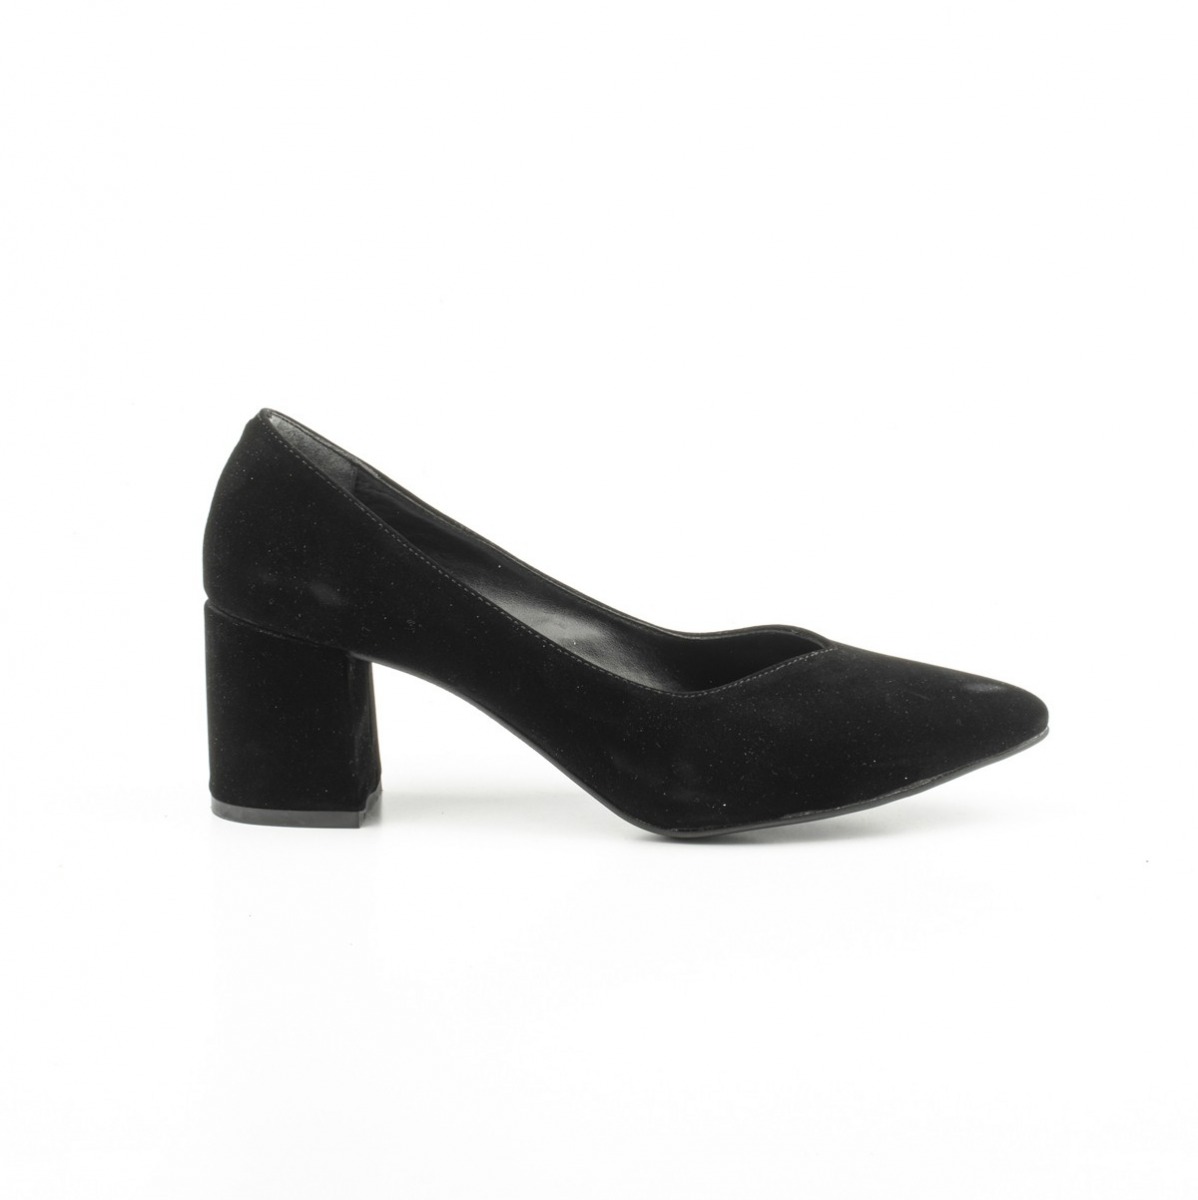 Flo Kadın Klasik Topuklu Ayakkabı. 2